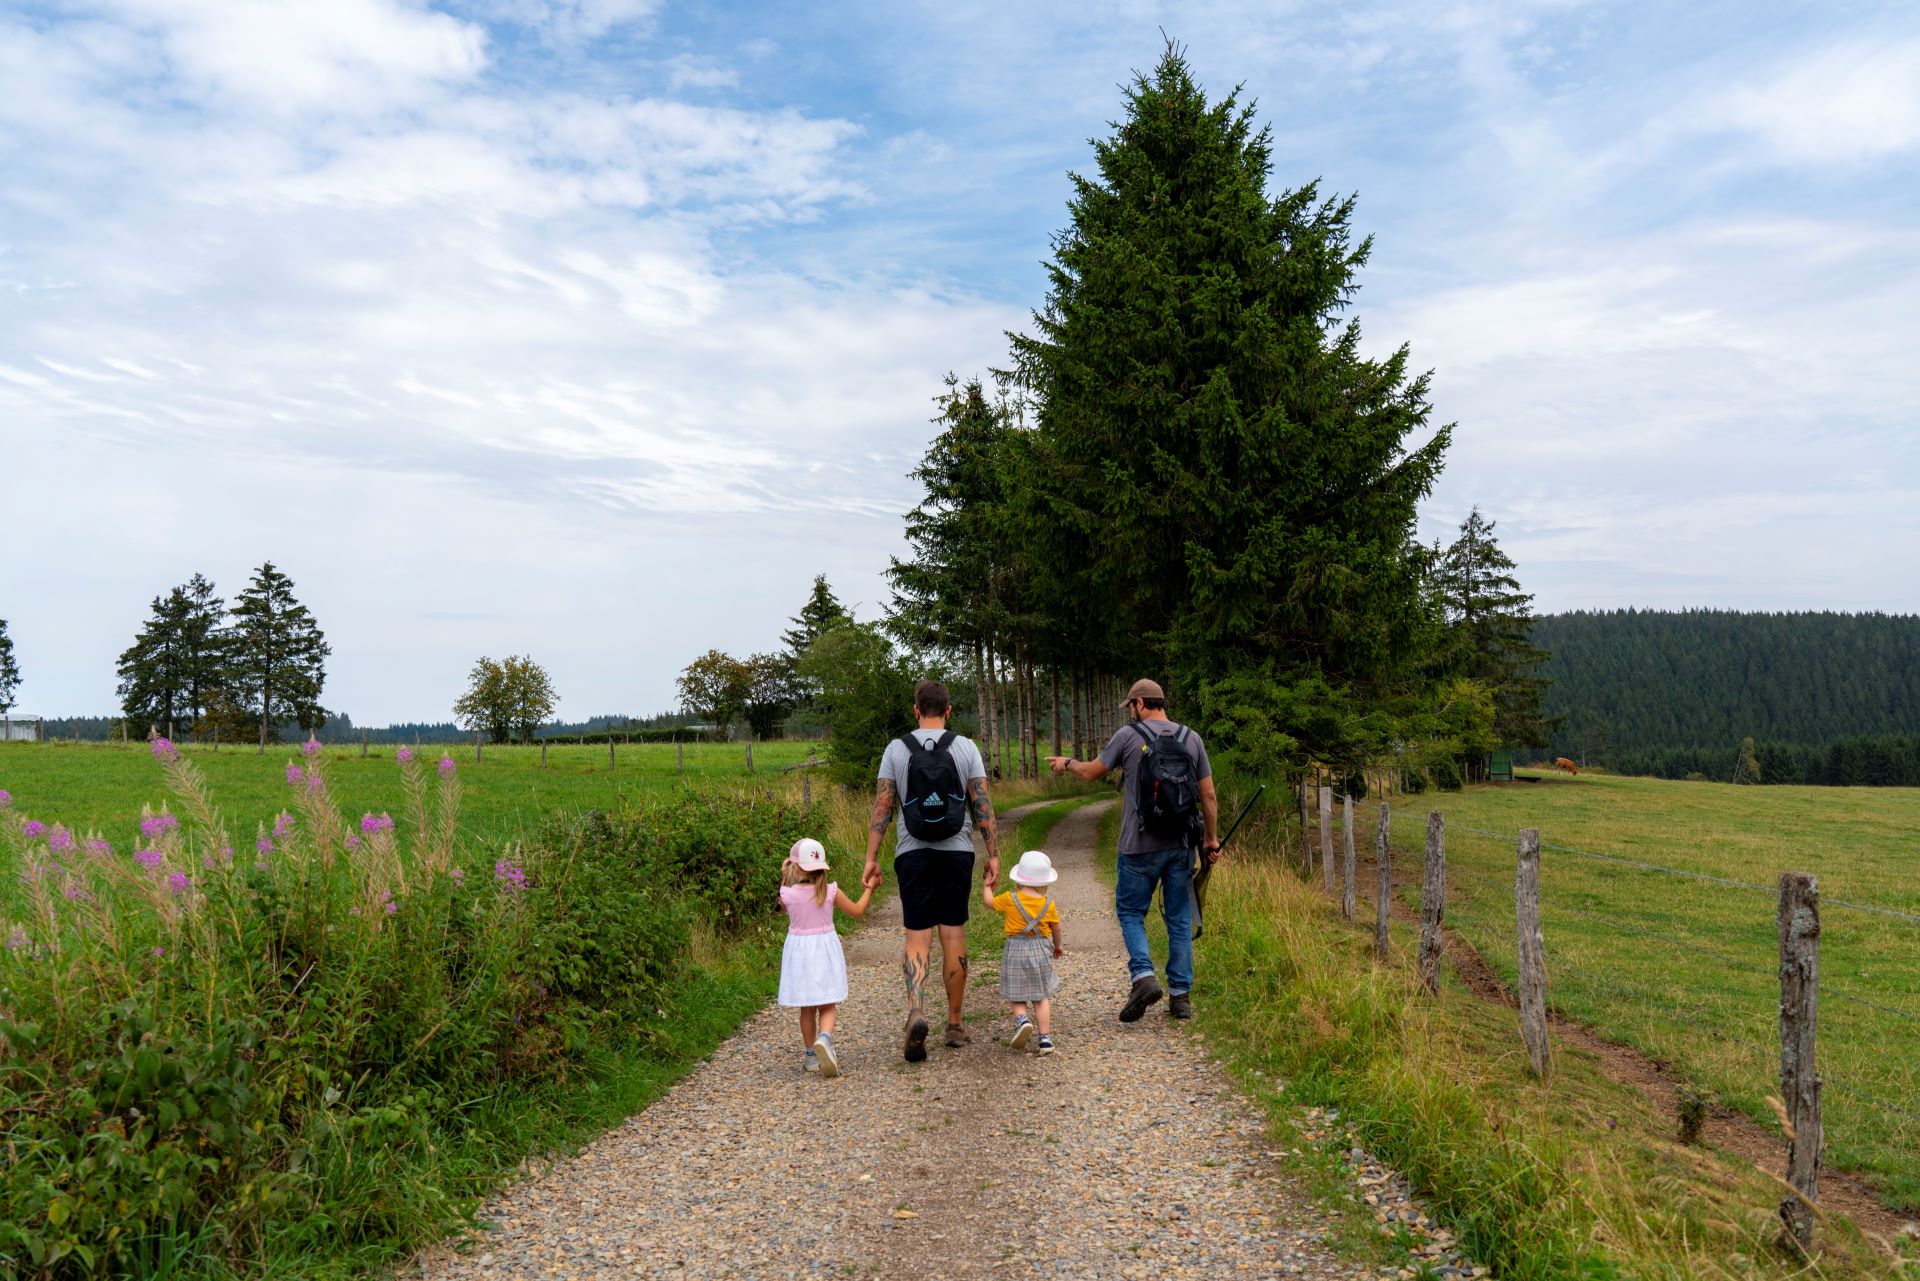 Ein Mann hält seine beiden kleinen Töchter an den Händen, während sie neben einem Naturführer spazieren gehen. Der Weg ist breit und kieselig, die umgebende Natur und die Bäume sind grün.